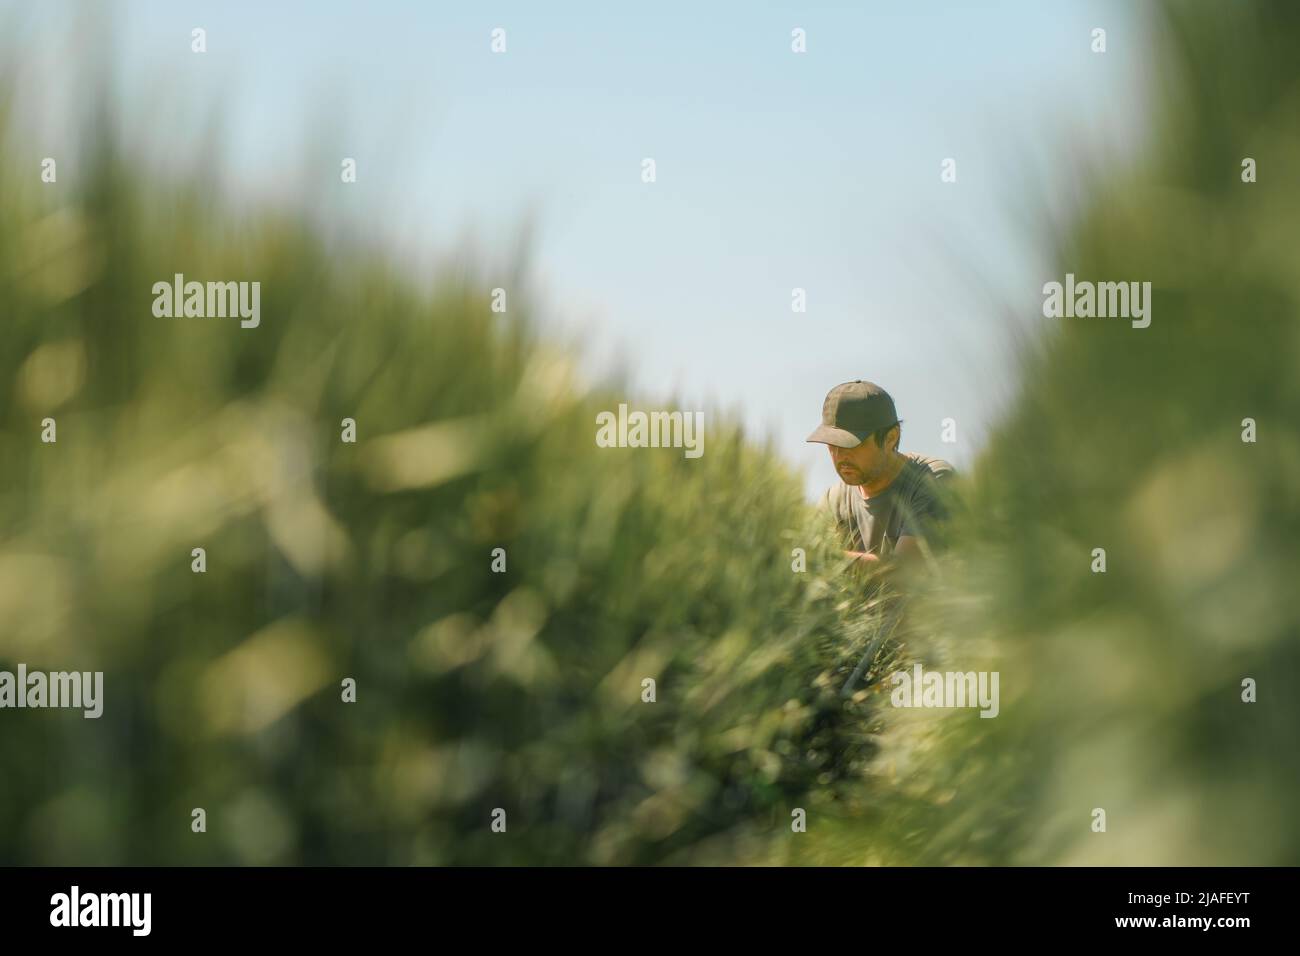 Porträt eines Bauern mittleren Alters, der in unreifen grünen Gerstenfeldern hockt und die Entwicklung des Getreidepflanzenohrs mit grünem Truckerhut und T-sh untersucht Stockfoto